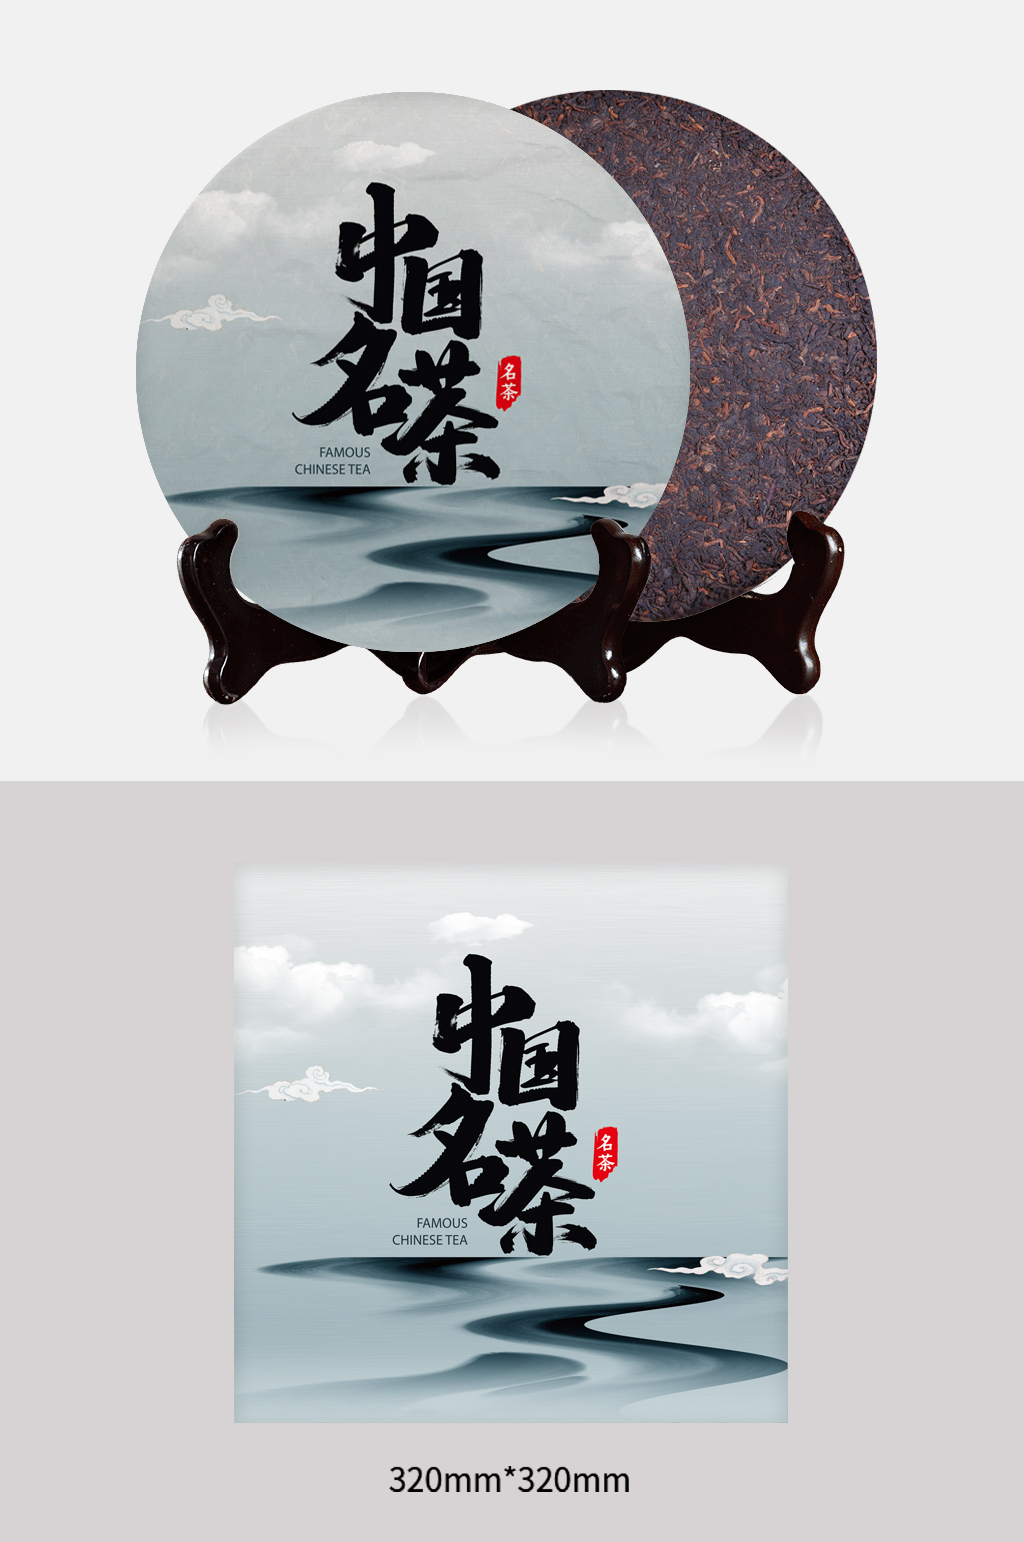 中国名茶茶叶包装设计